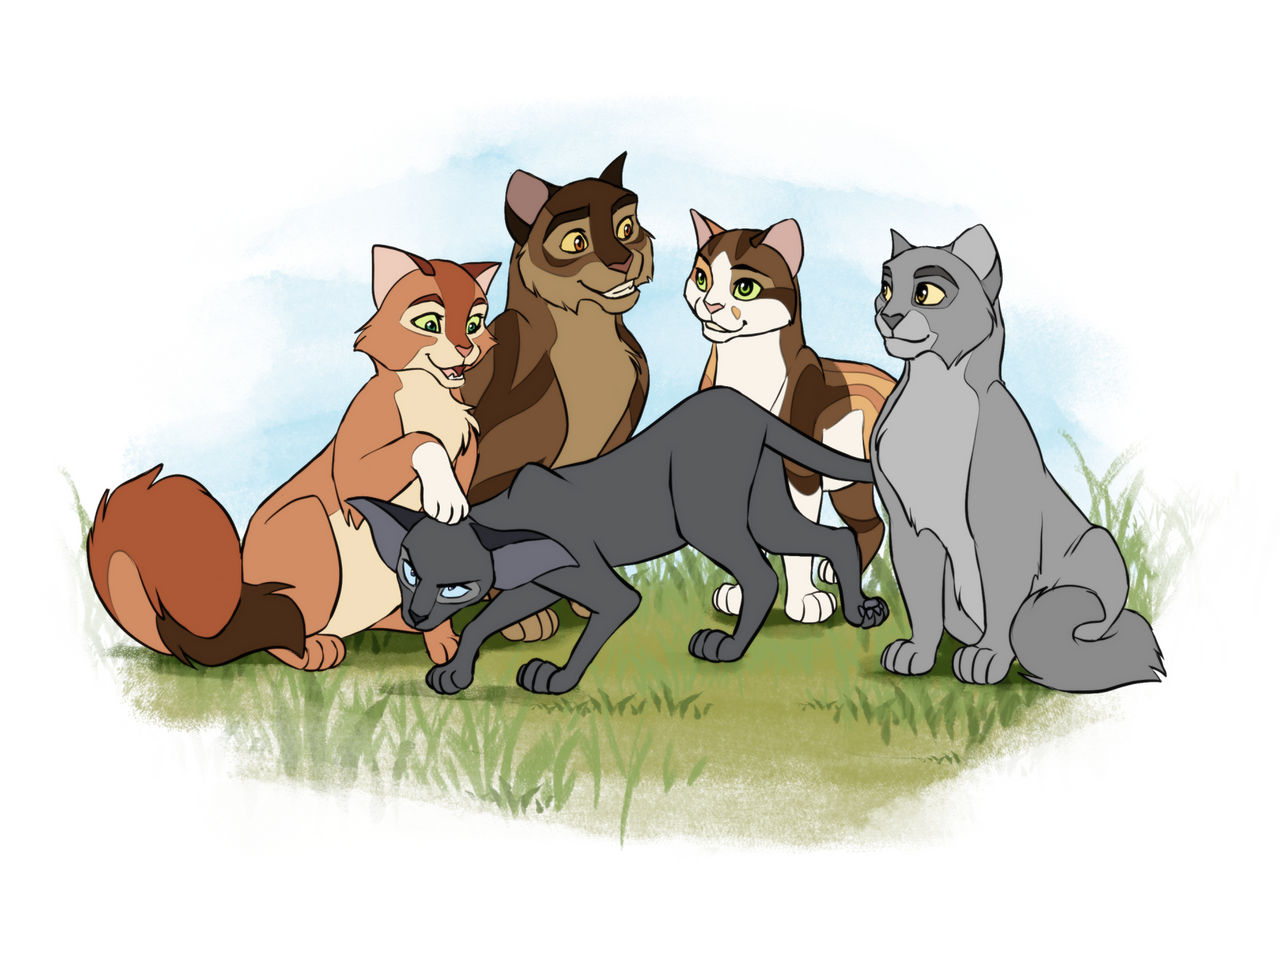 cats-warriors-webbg by CloverCoin on DeviantArt